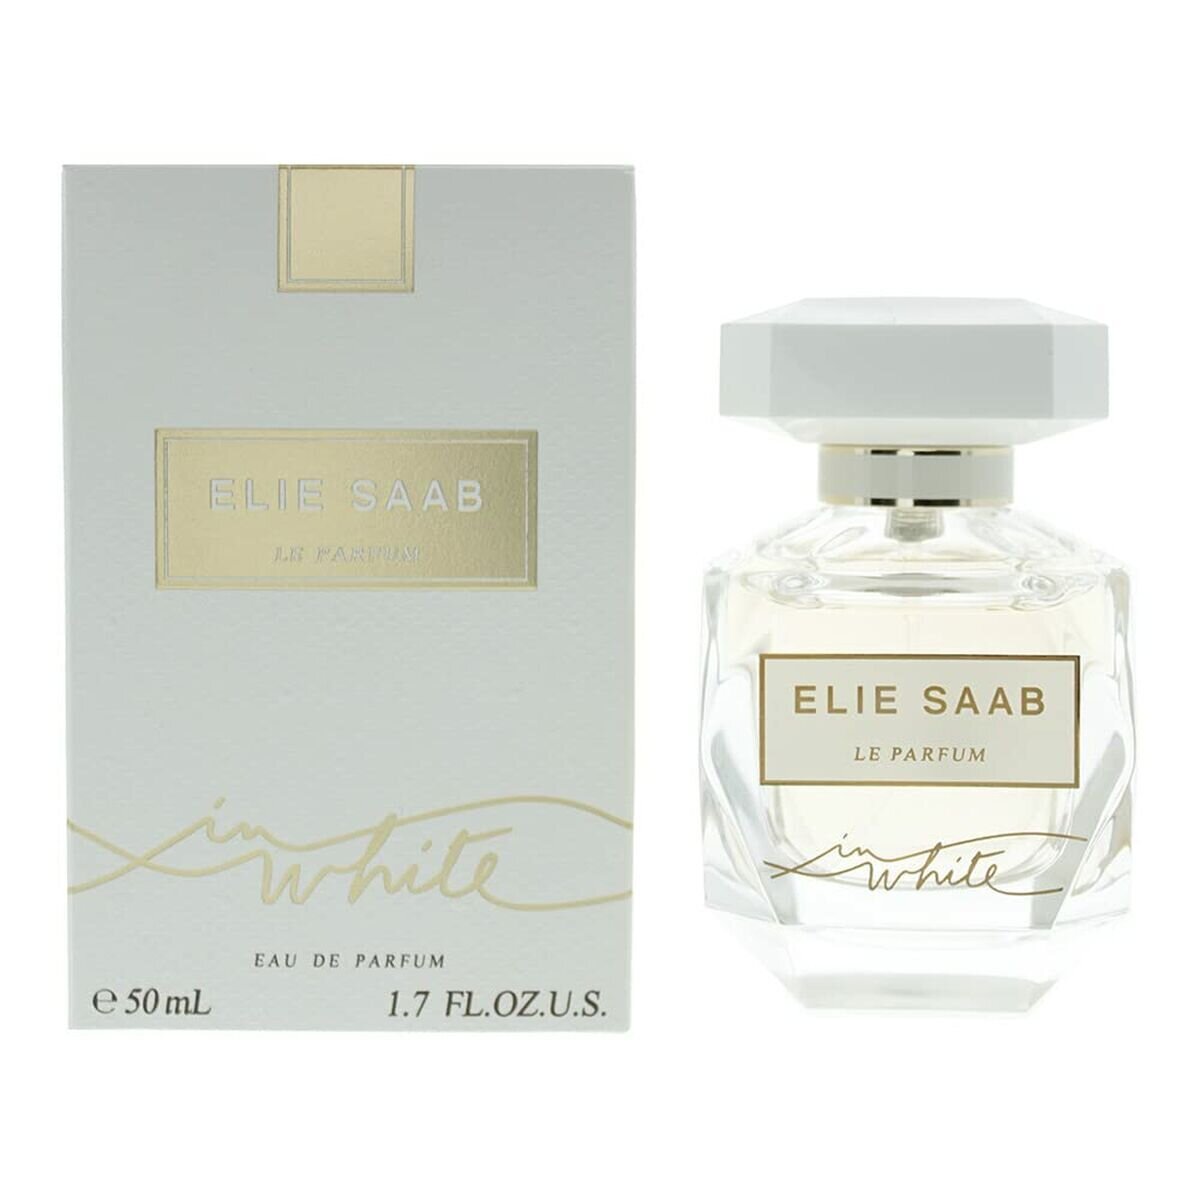 Elie Saab Le Parfum In White Eau De Parfum 50 ml